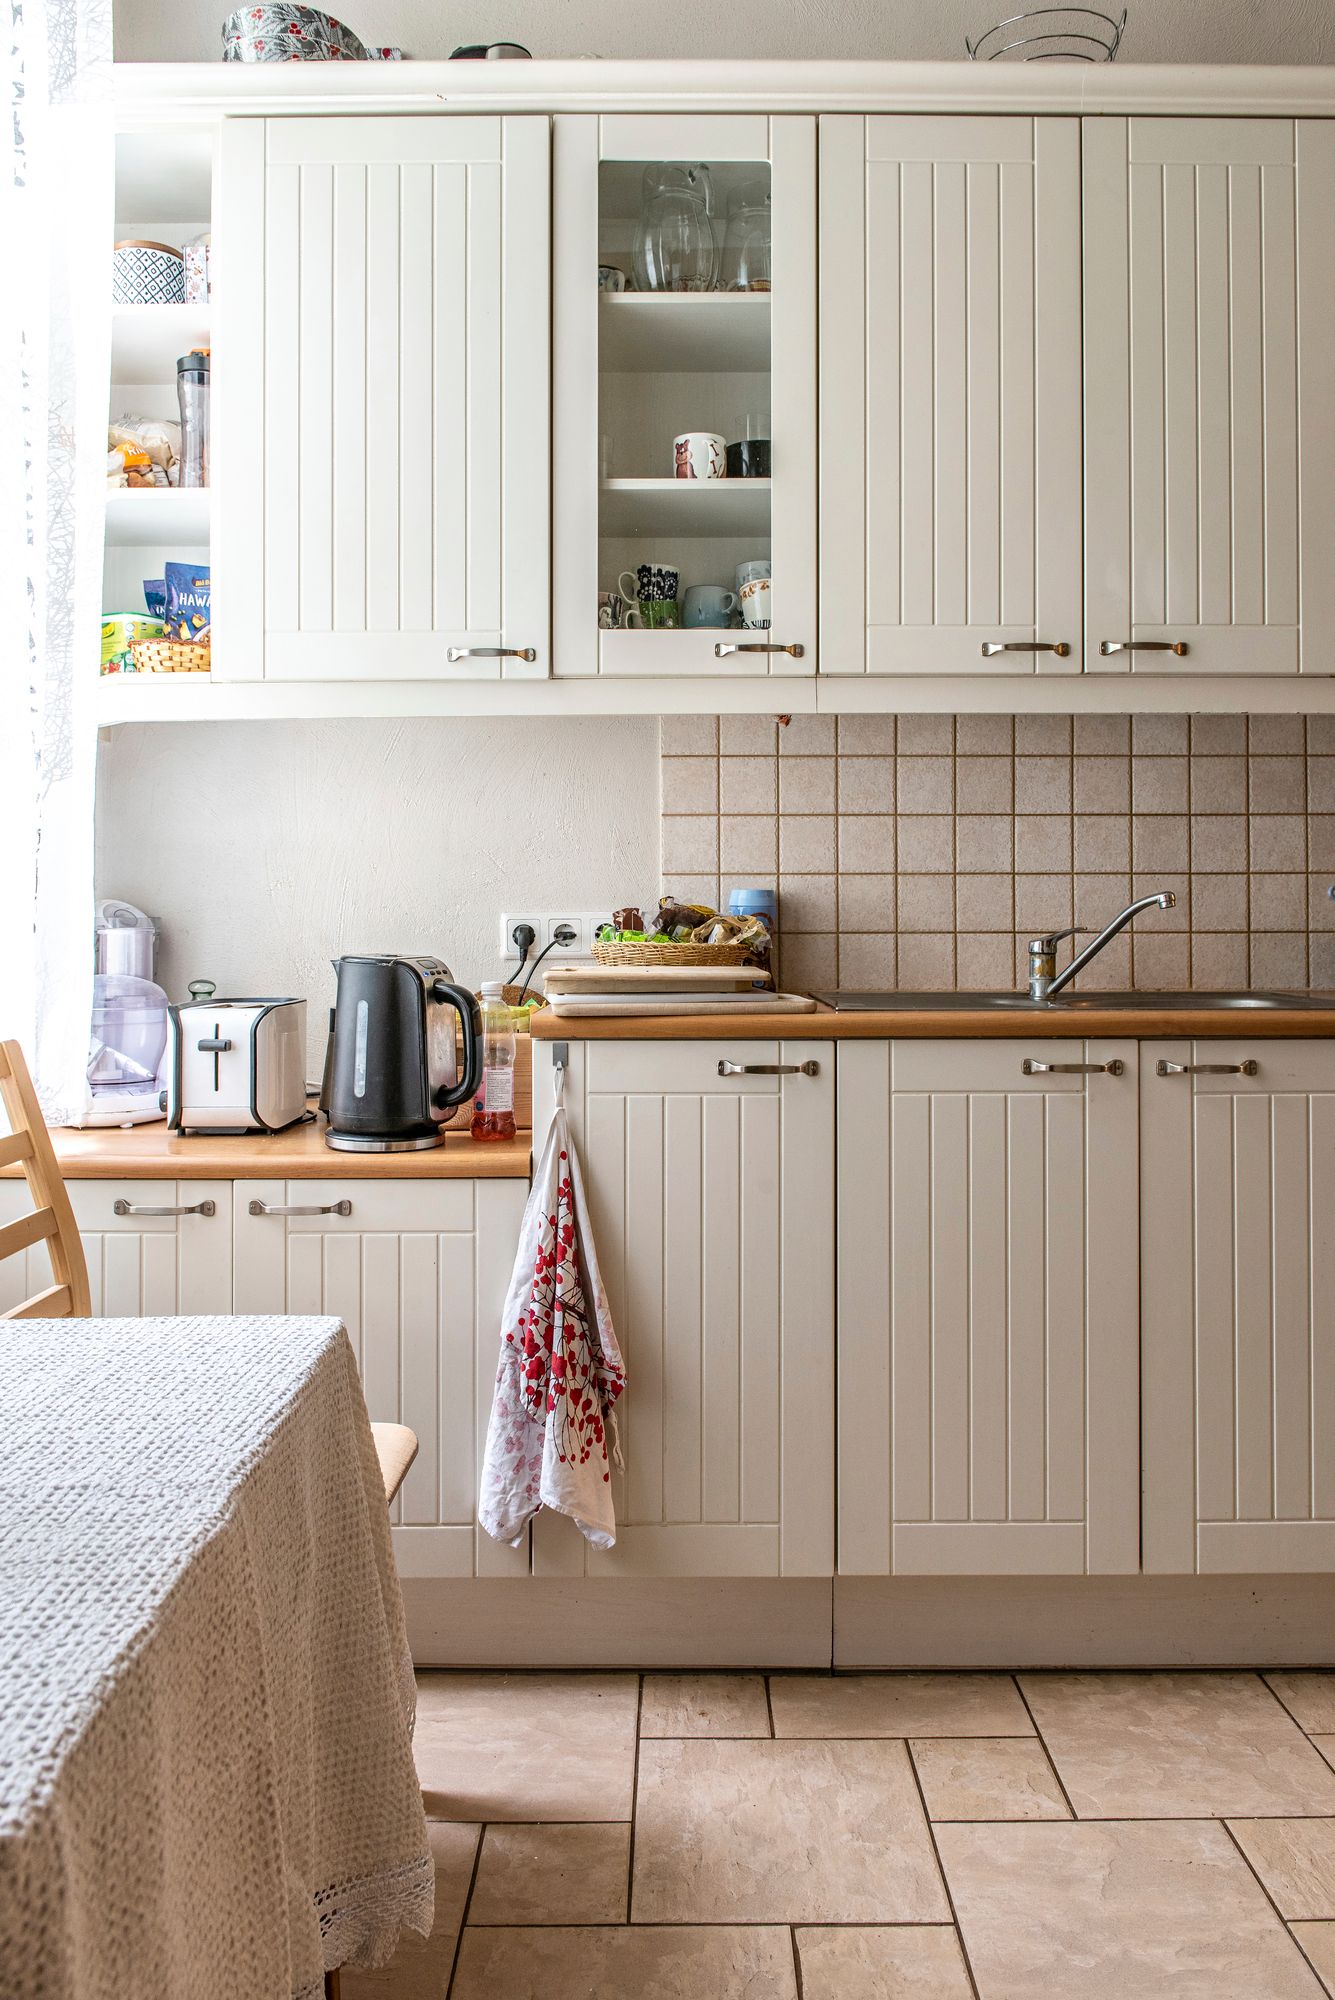 Keittiön kaapistot on uusittu 1930-luvun tyylin mukaisiksi. © Pauliina Salonen